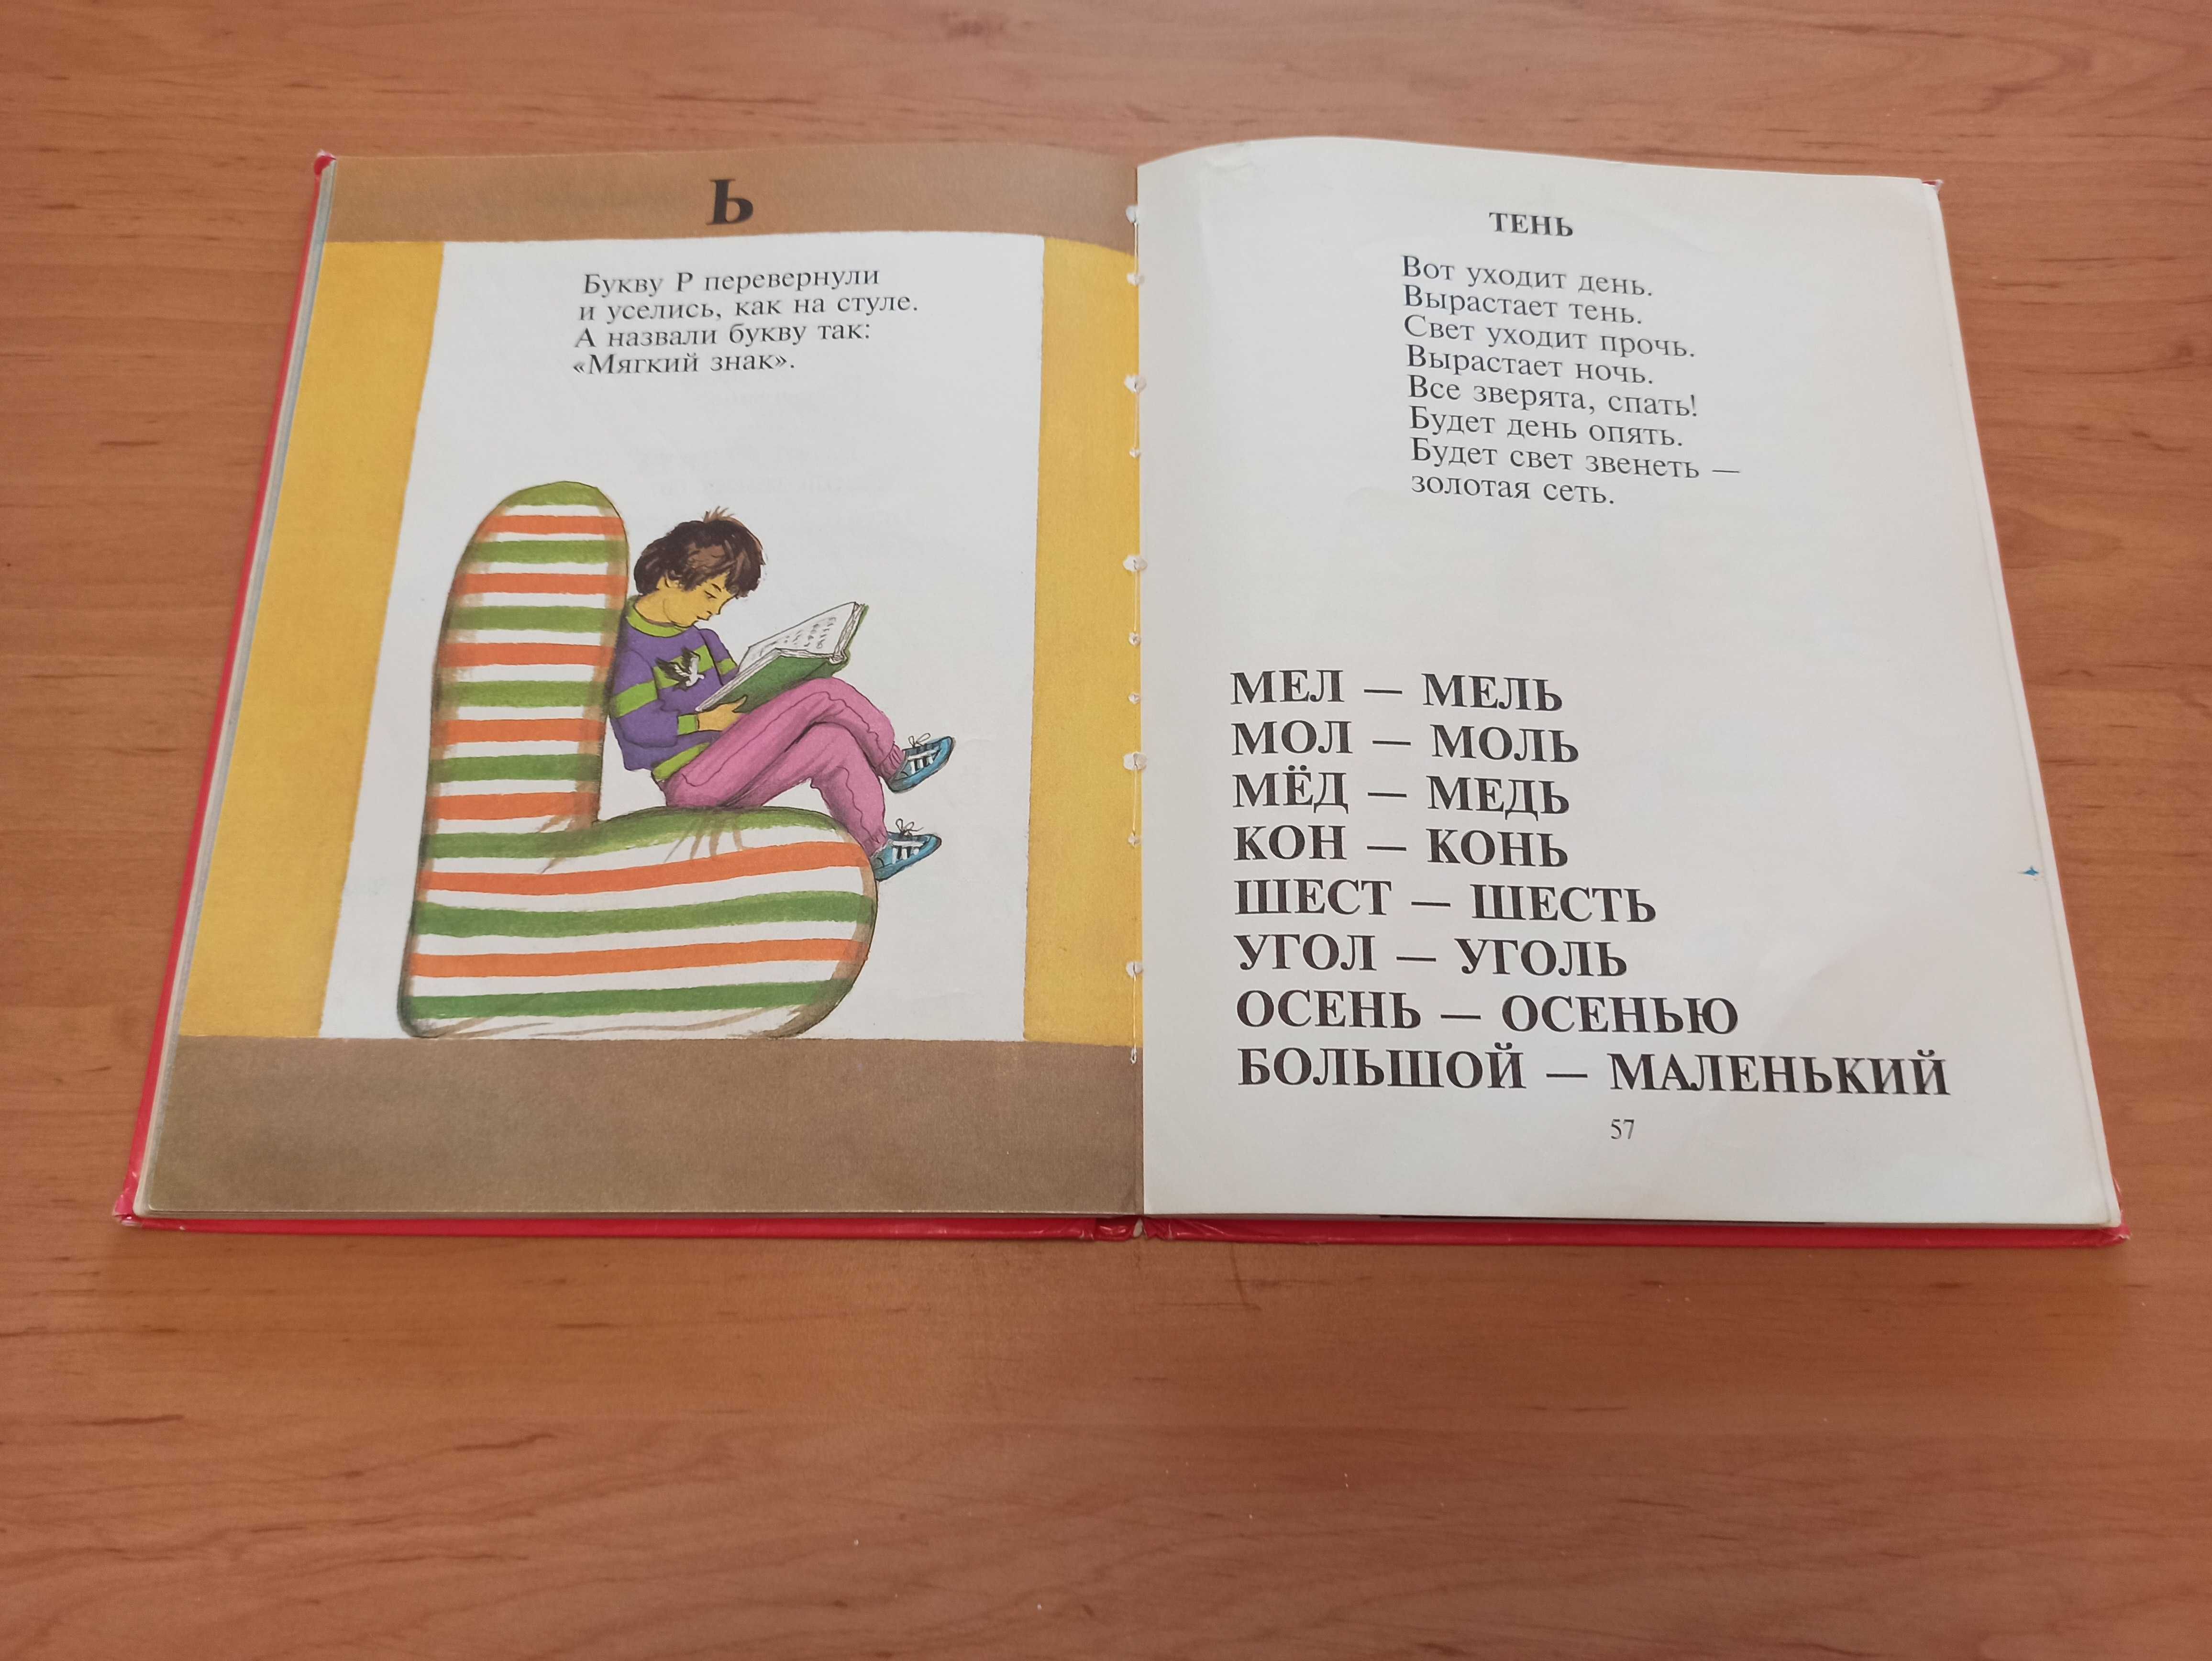 Букварь Генрих Сапгир раритет редкая детская азбука для детей